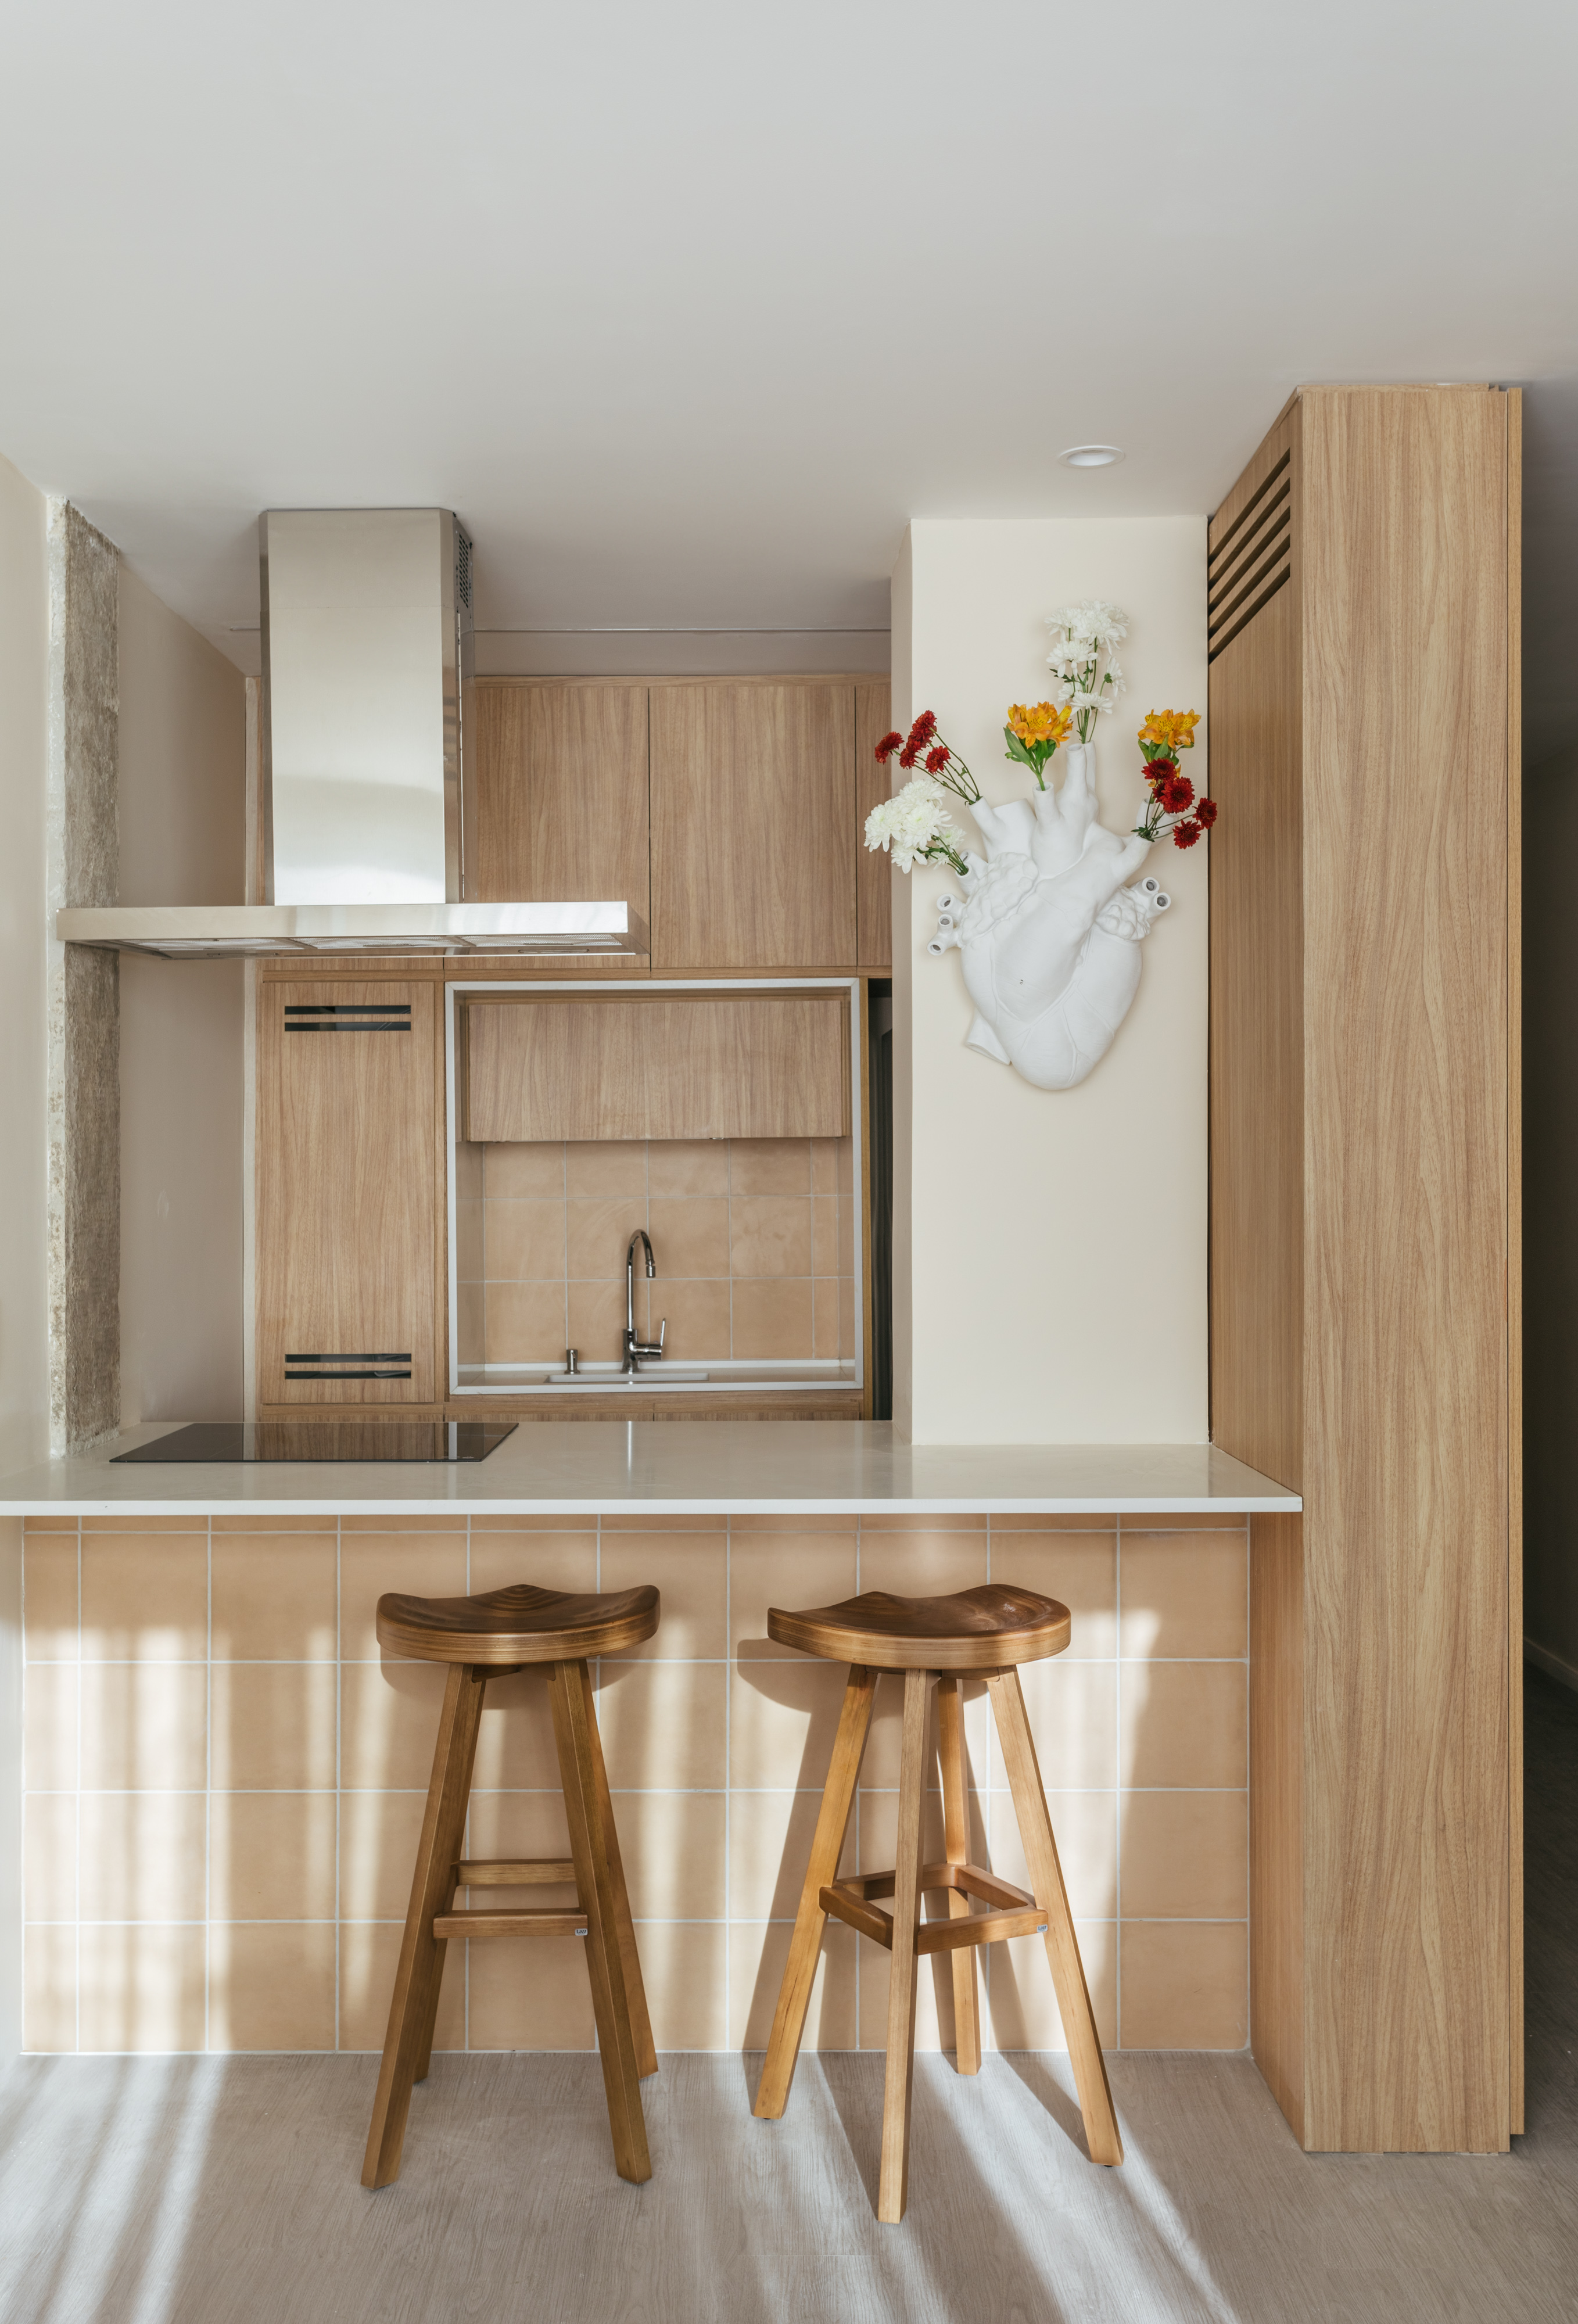 Projeto de Rodolfo Consoli. Na foto, cozinha integrada pequena com marcenaria clara e banquetas de madeira.